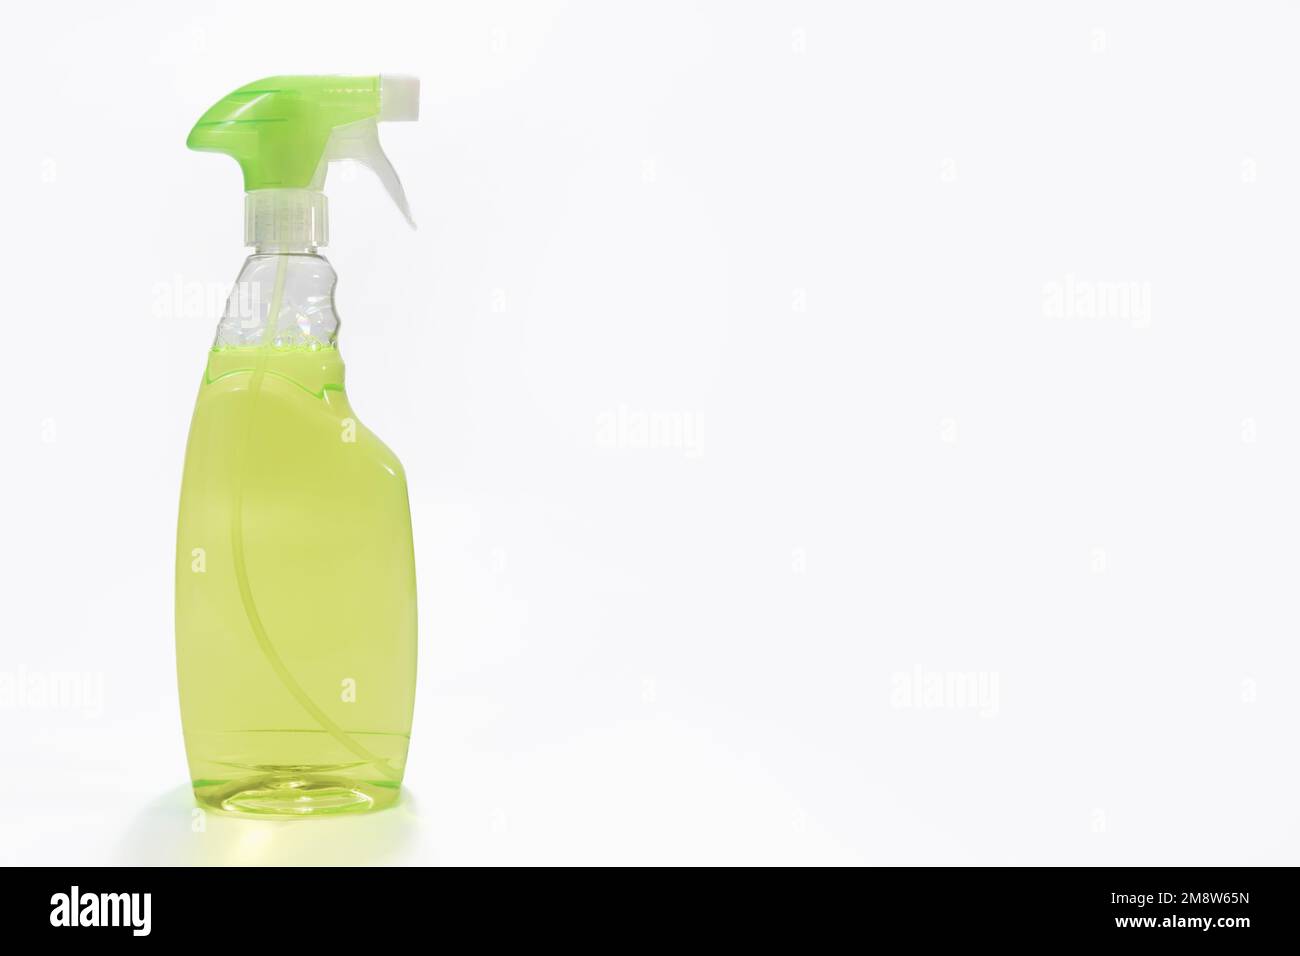 Pulverice la botella con detergente verde. sobre un fondo blanco con un espacio de copia Foto de stock